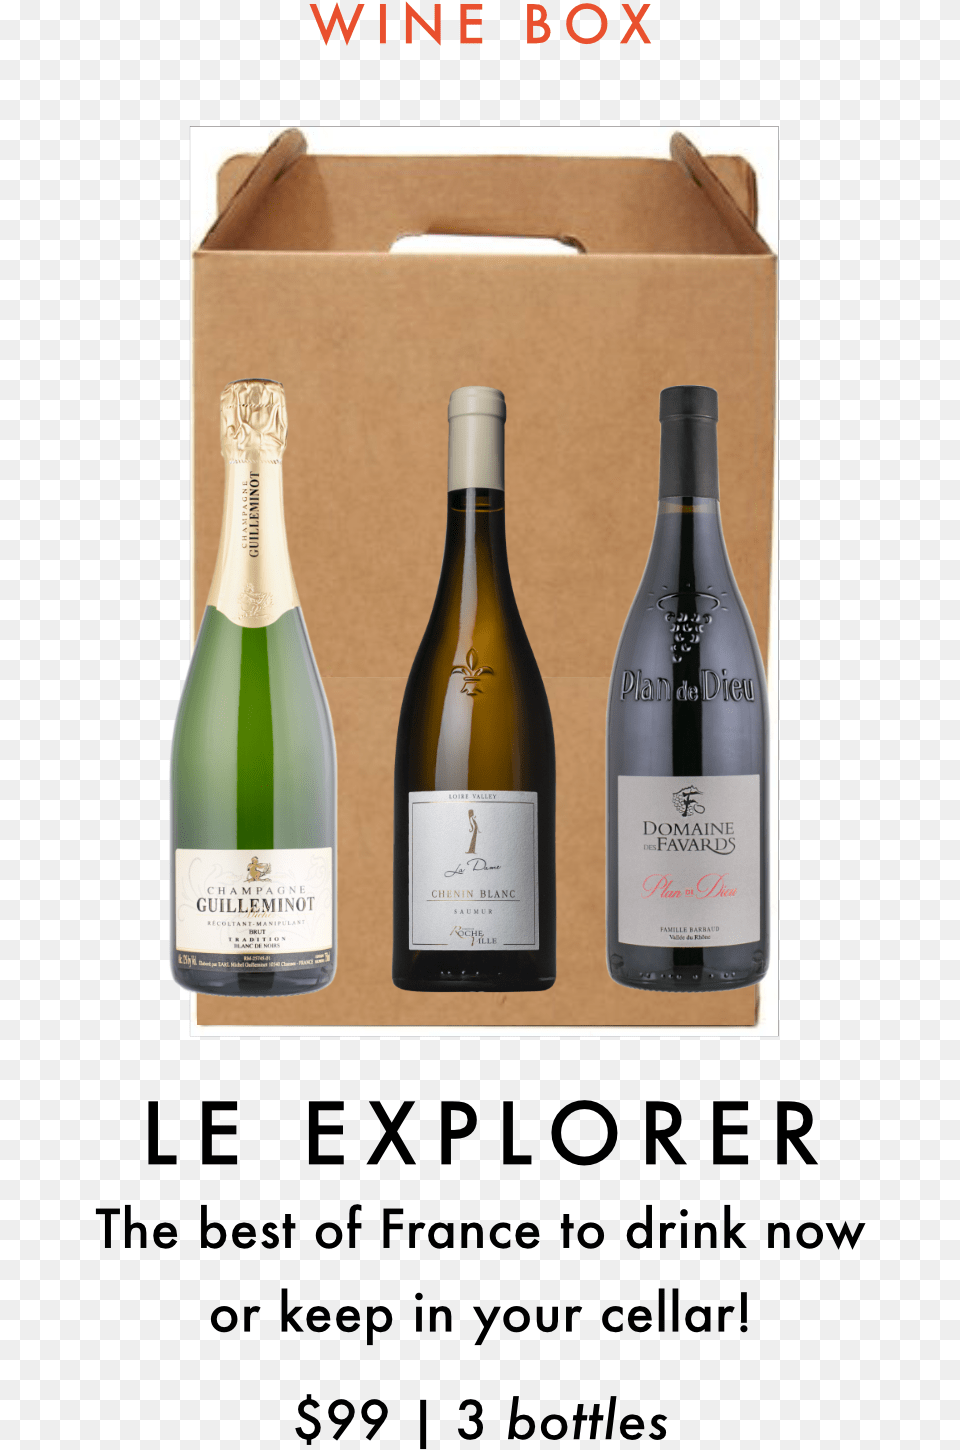 La Cave April Wine Club Box Selection Portable Network Graphics, Alcohol, Beverage, Bottle, Liquor Png Image